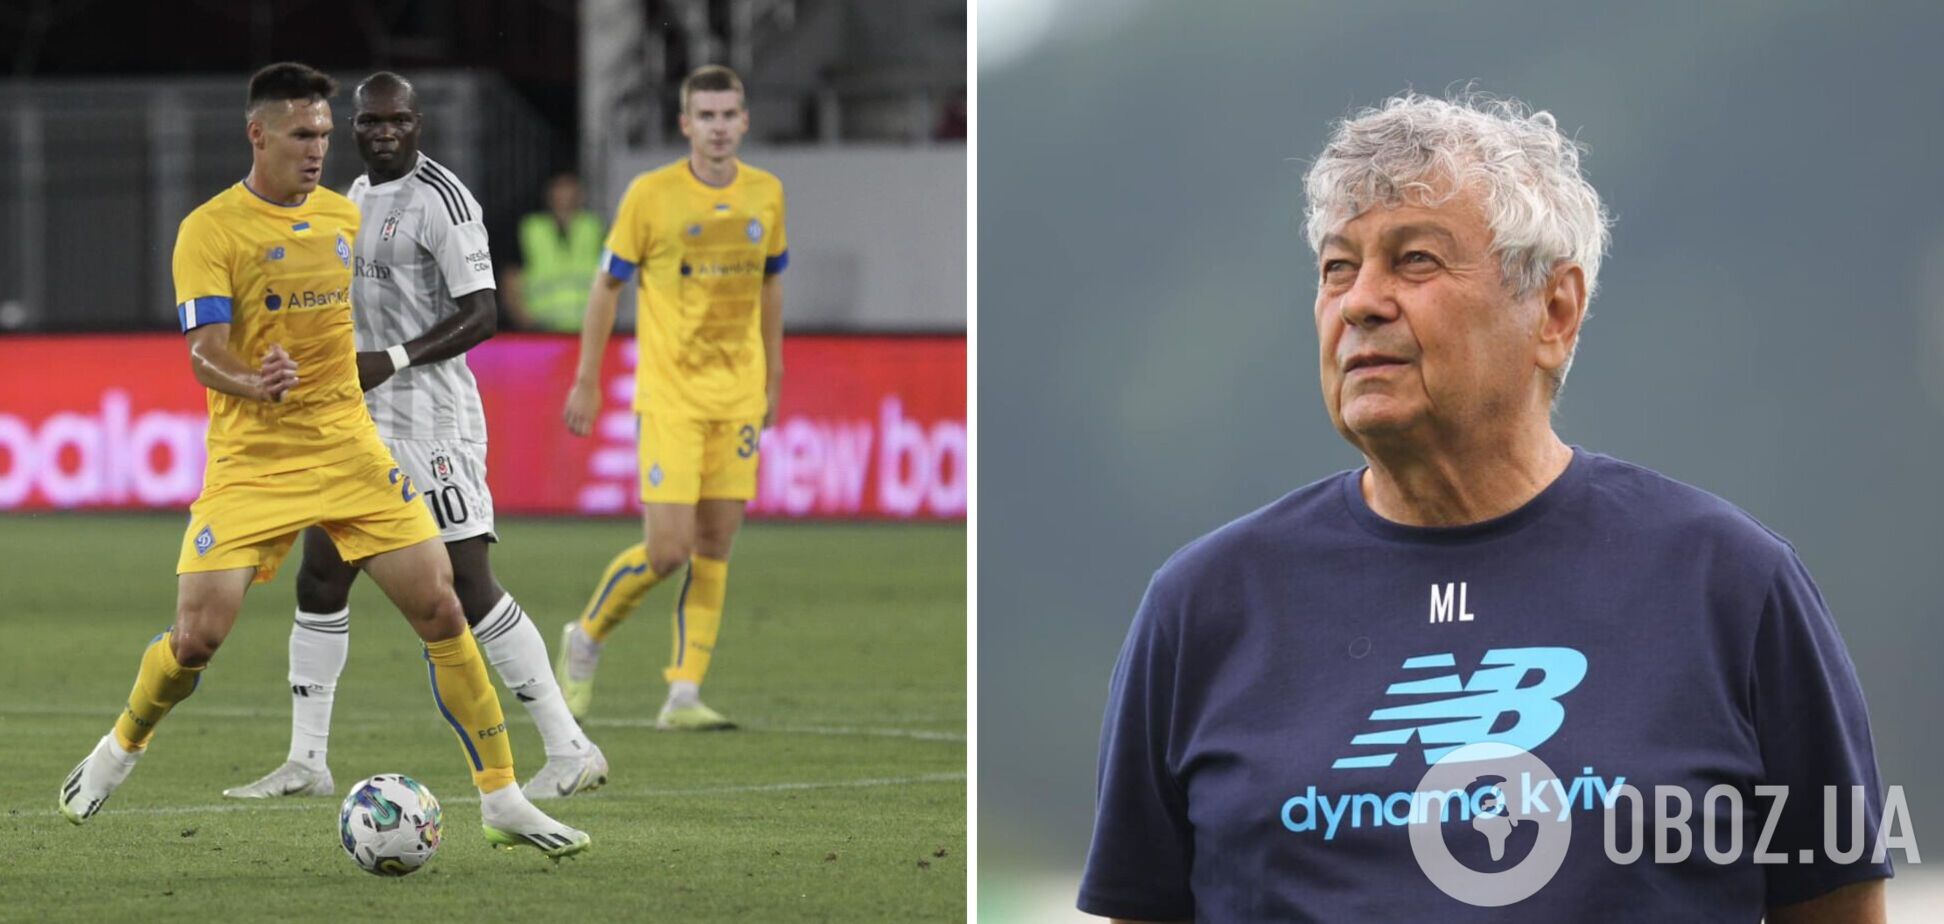 'Играли против сборной Африки': Луческу отметился неоднозначным высказыванием после поражения 'Динамо' от 'Бешикташа'